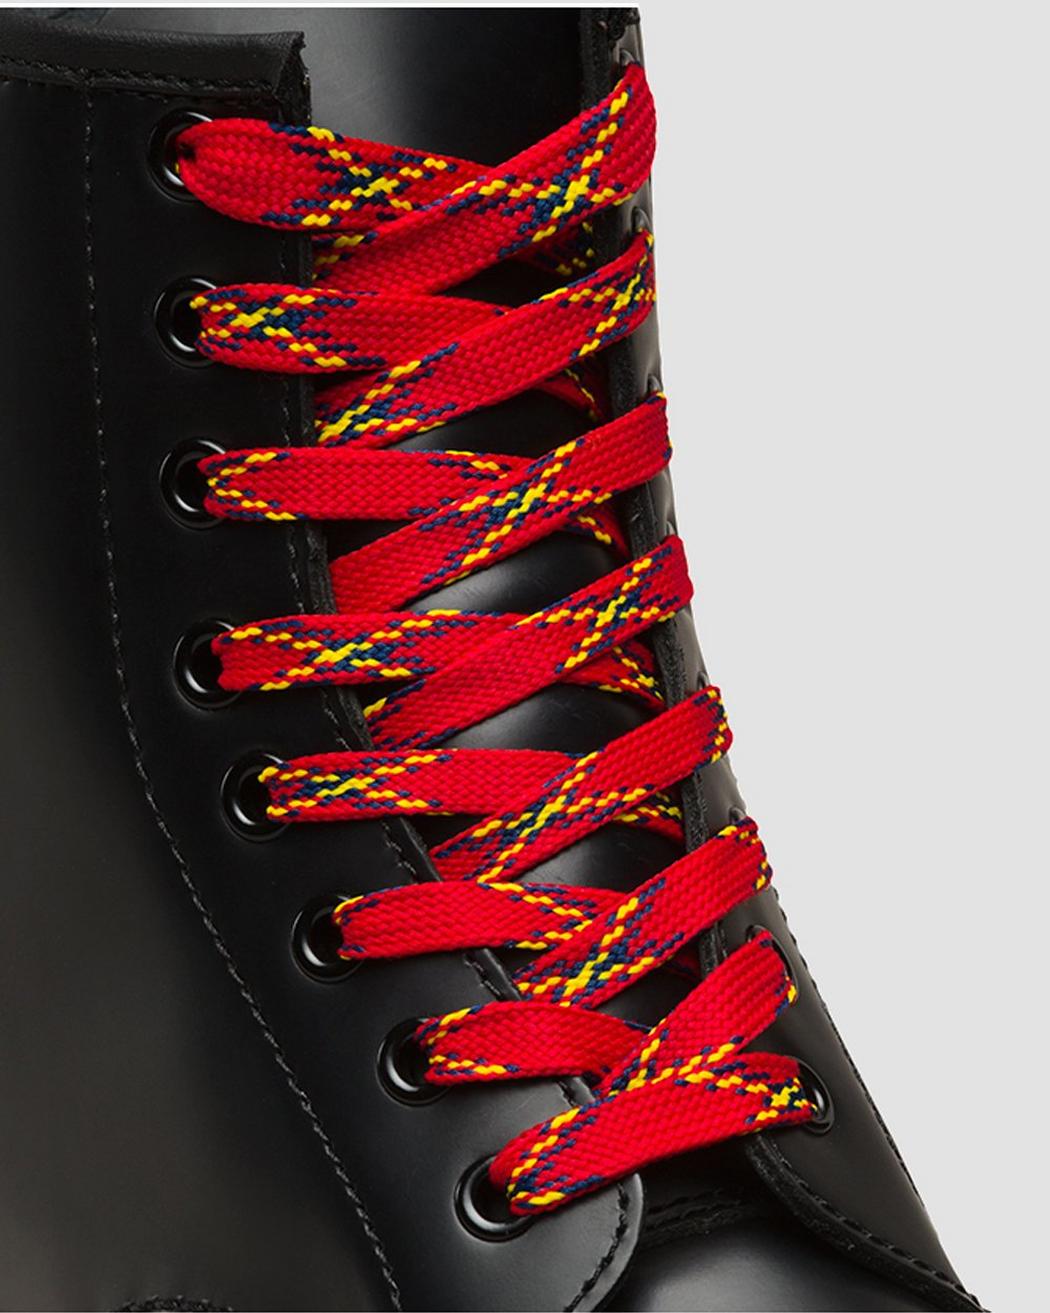 plaid shoelaces